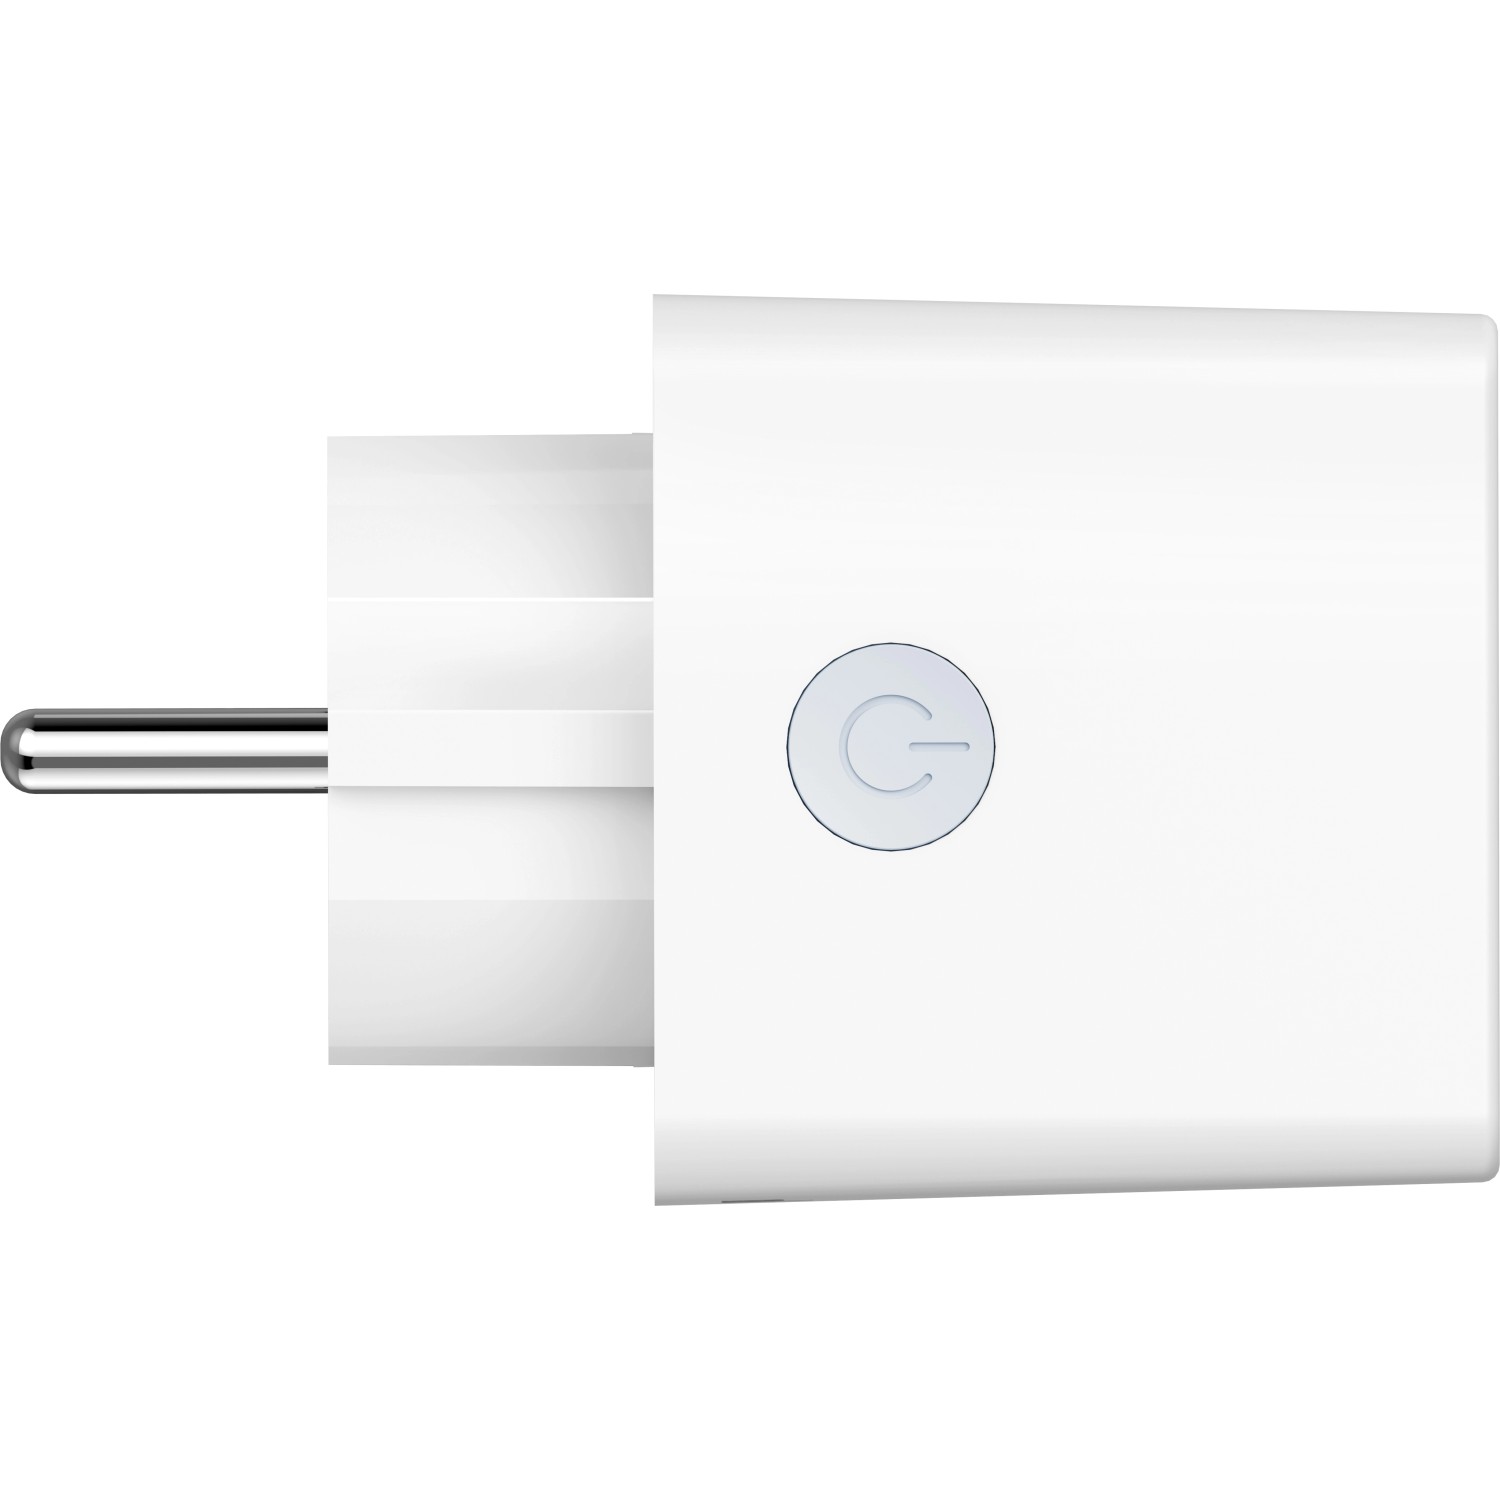 Hama Wlan-Steckdose Mini Smart Home 3.680 W 16 A Weiß kaufen bei OBI